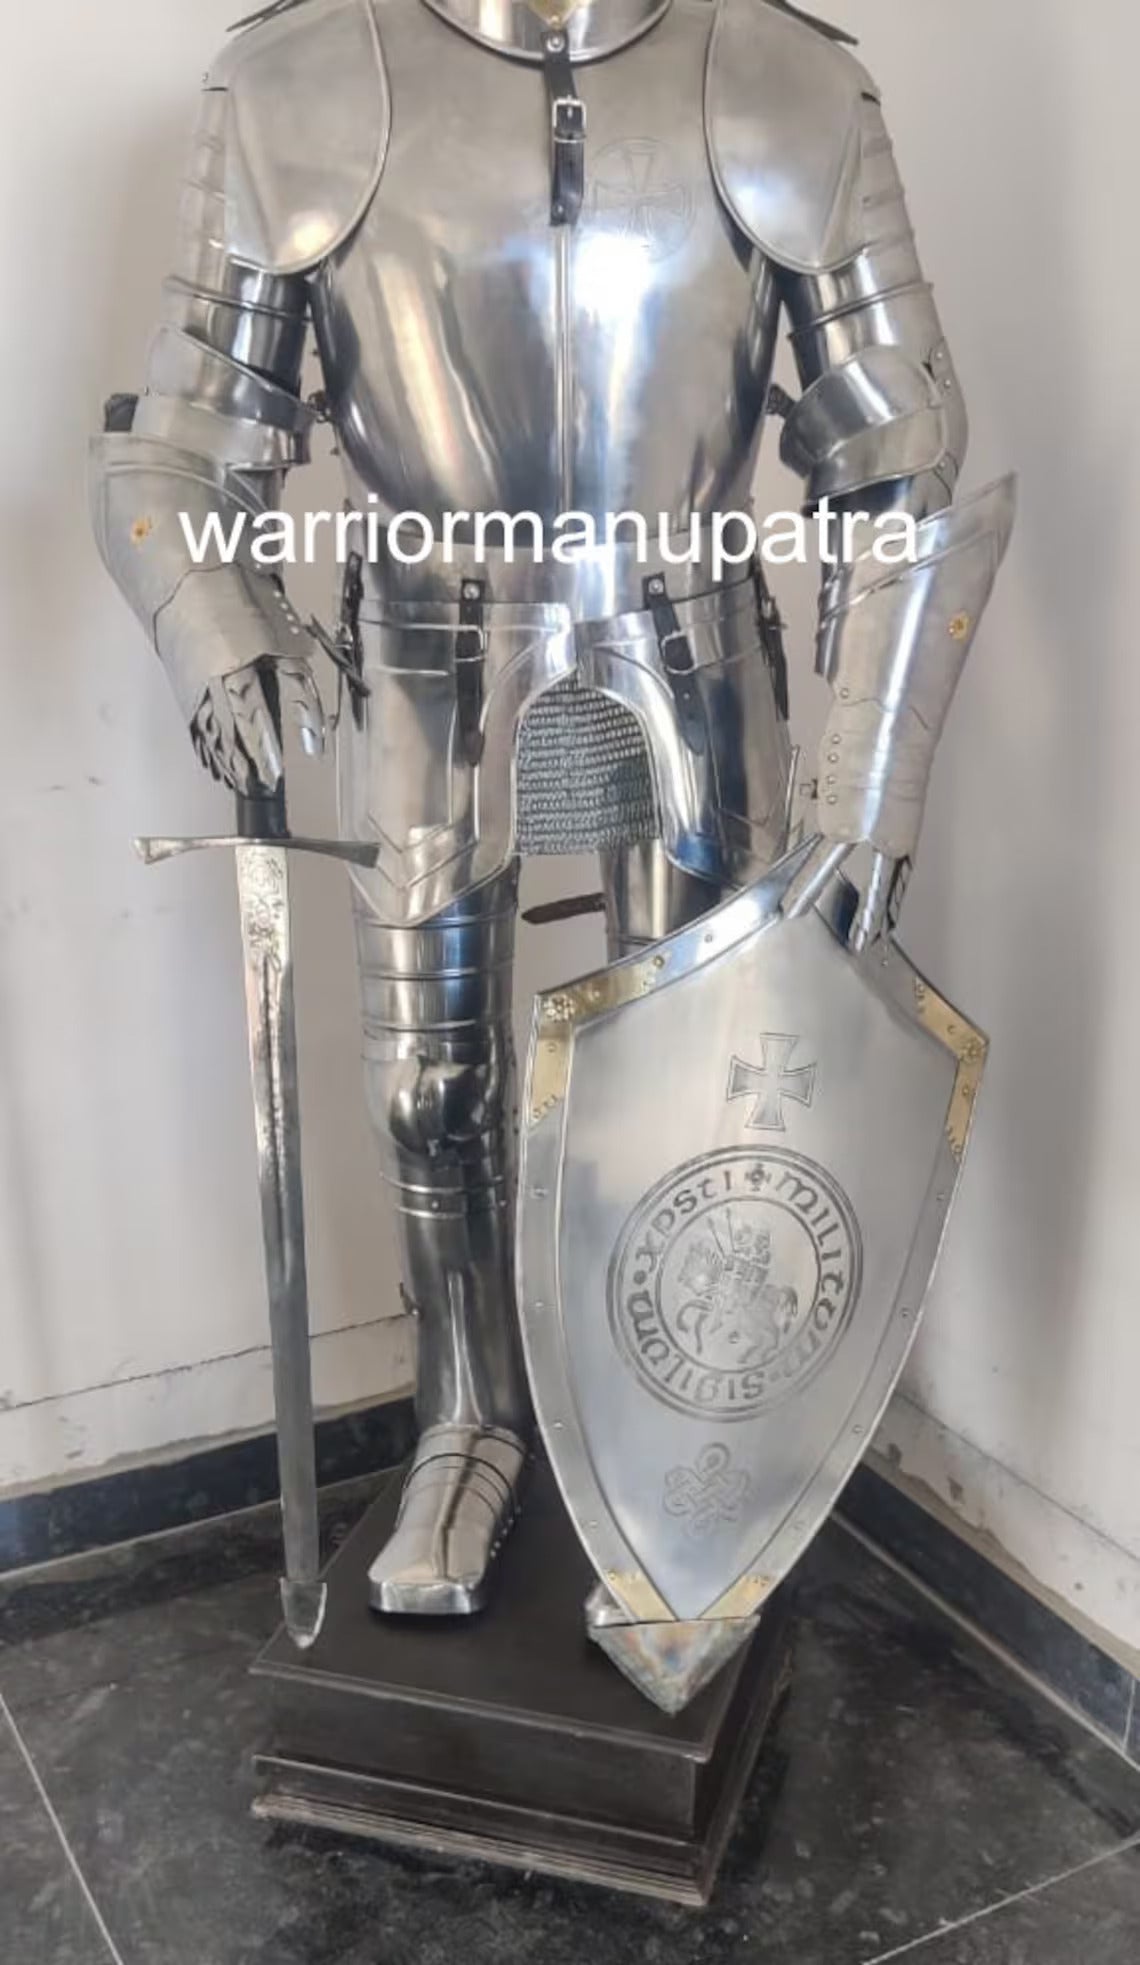 Medieval Templar Knight Armour